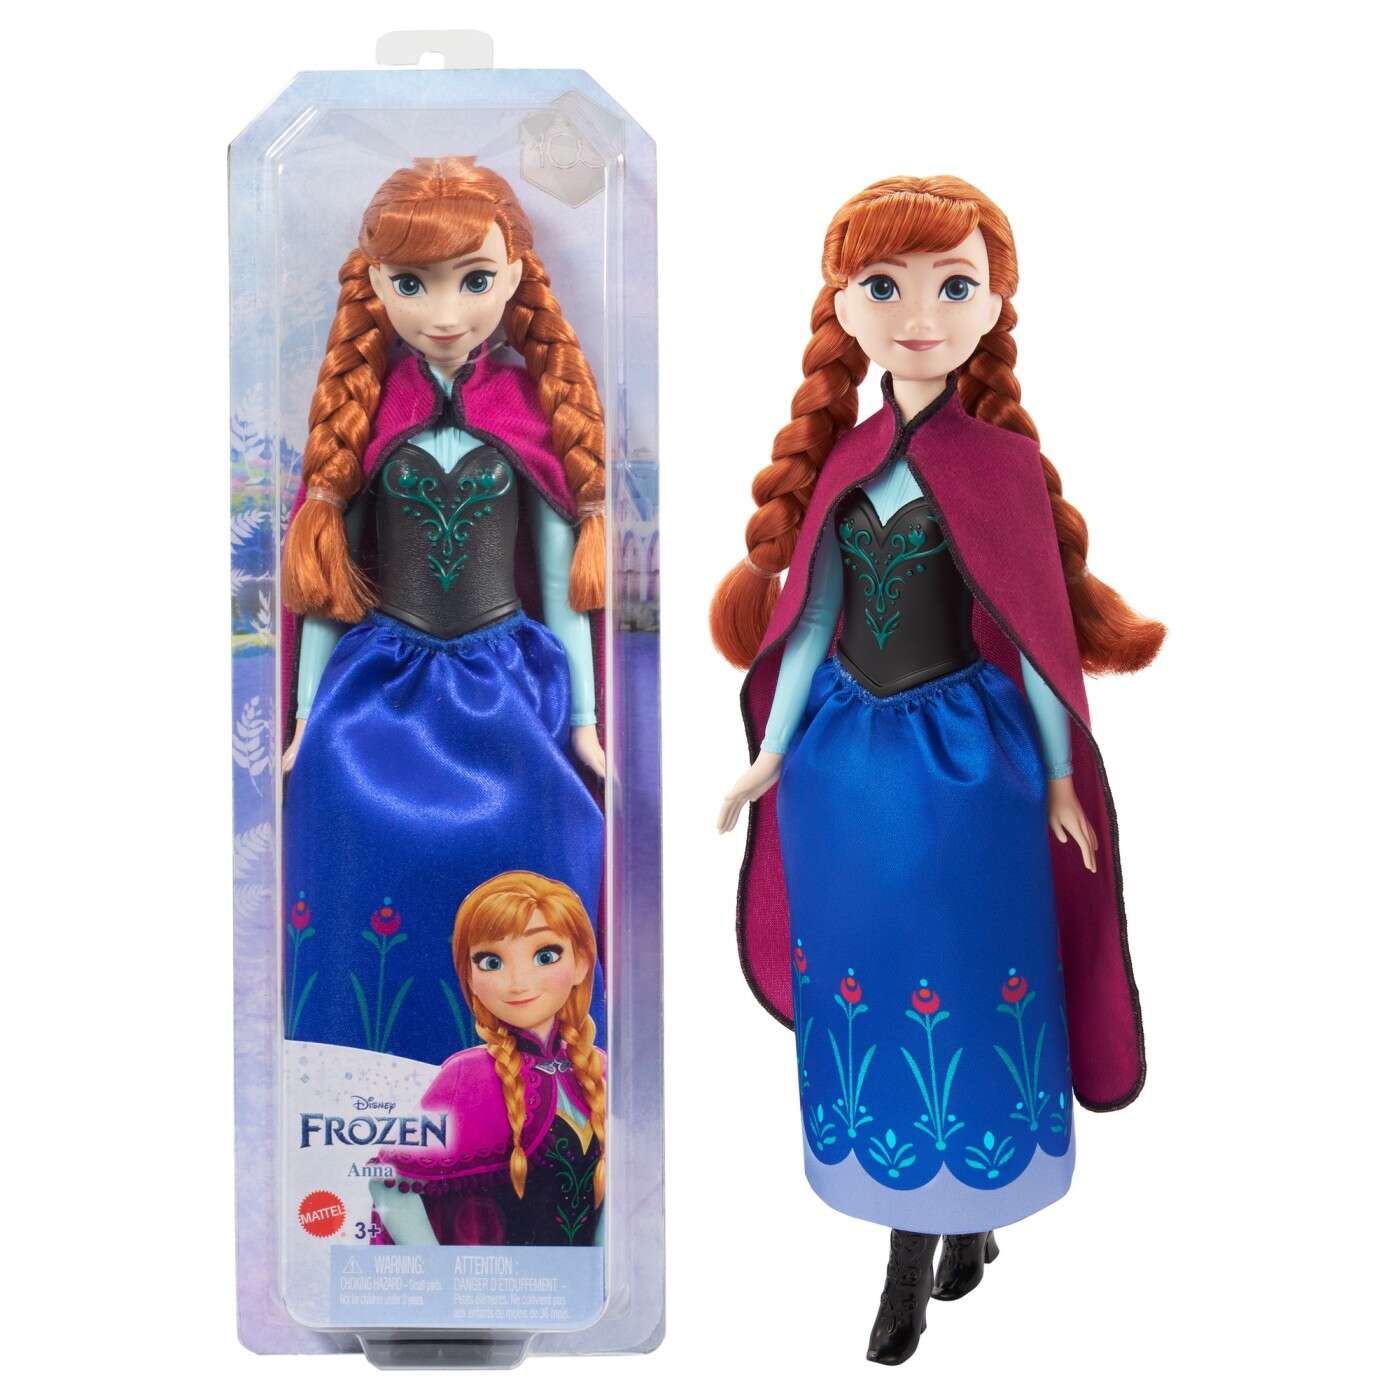 Papusa Disney Frozen - Anna cu codite | Mattel